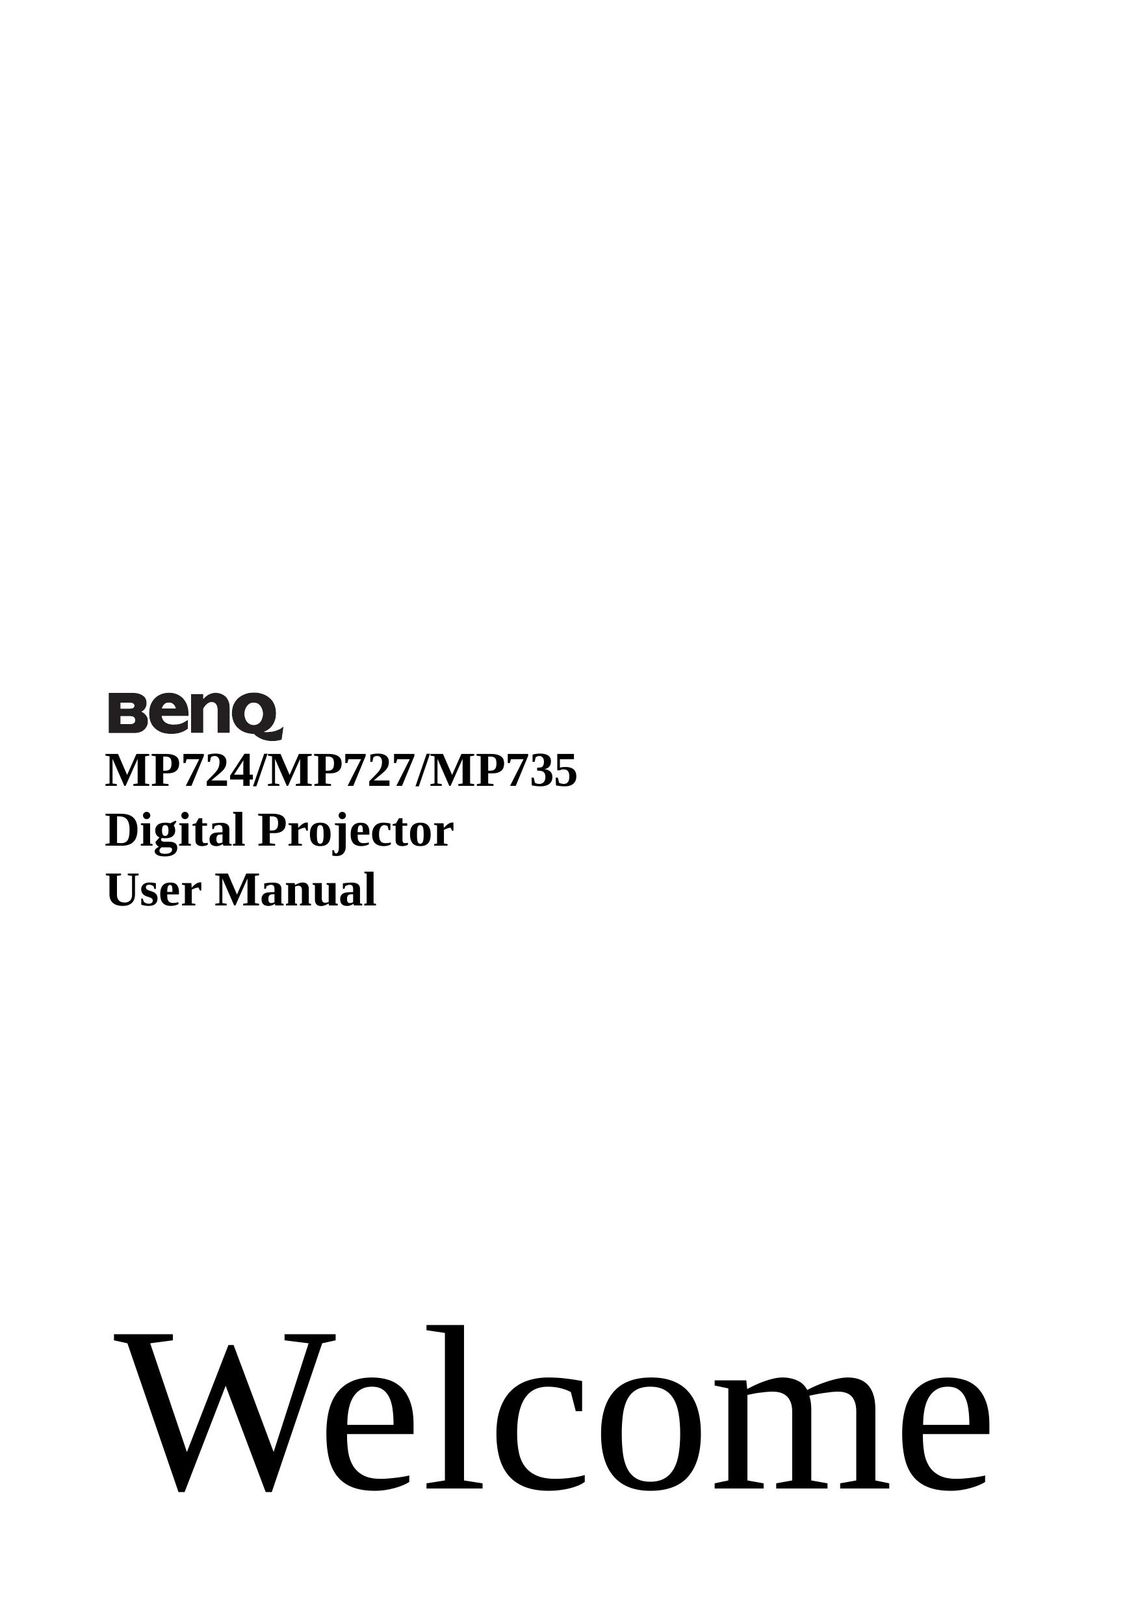 BenQ MP735 Projector User Manual